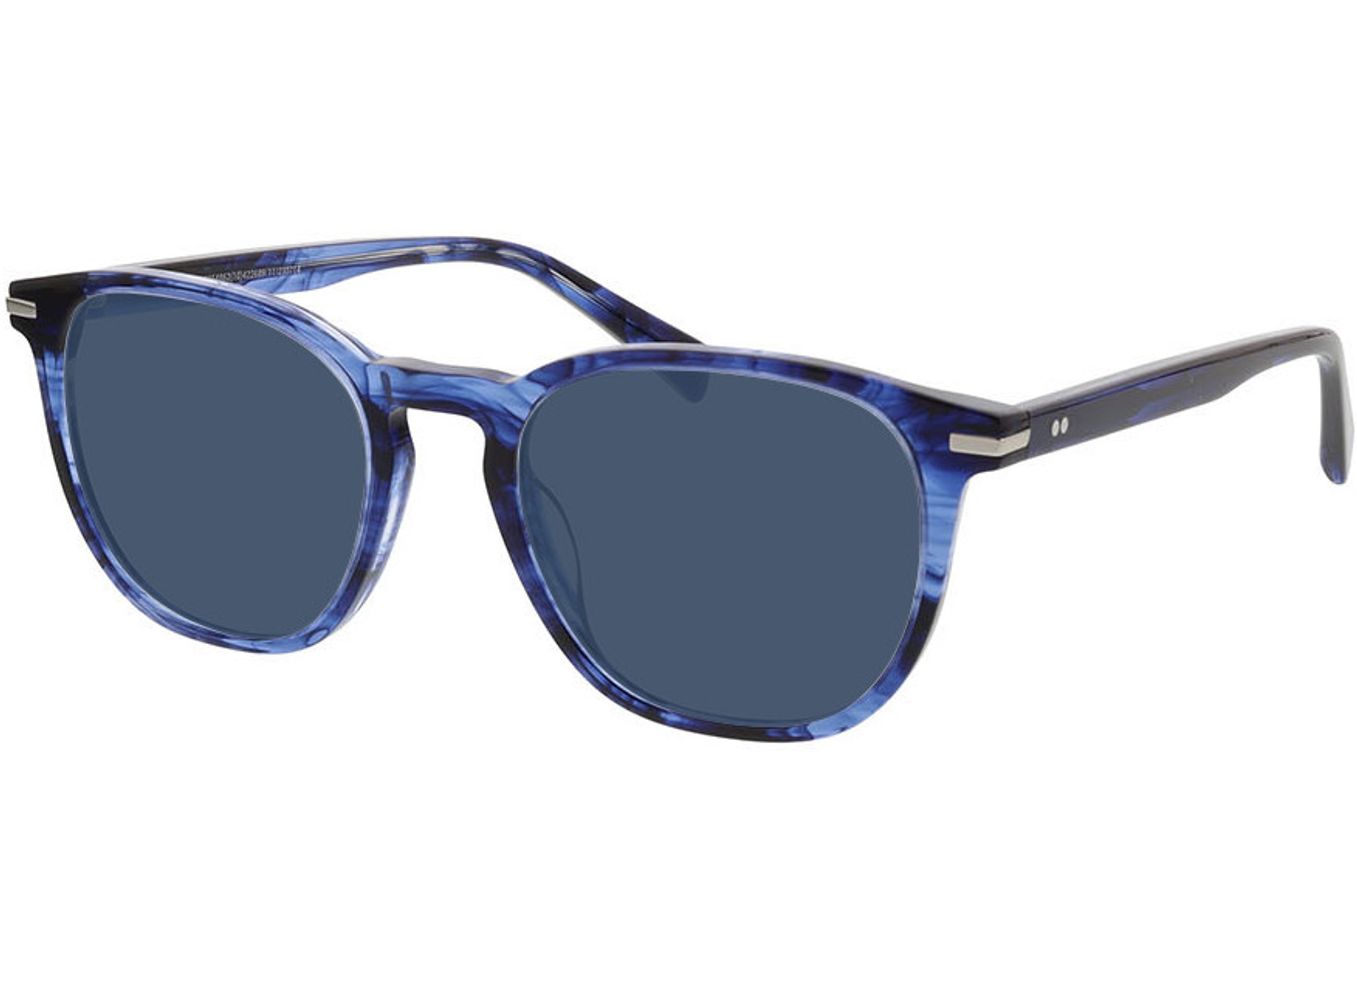 Preston - blau-meliert Sonnenbrille mit Sehstärke, Vollrand, Eckig von Brille24 Collection